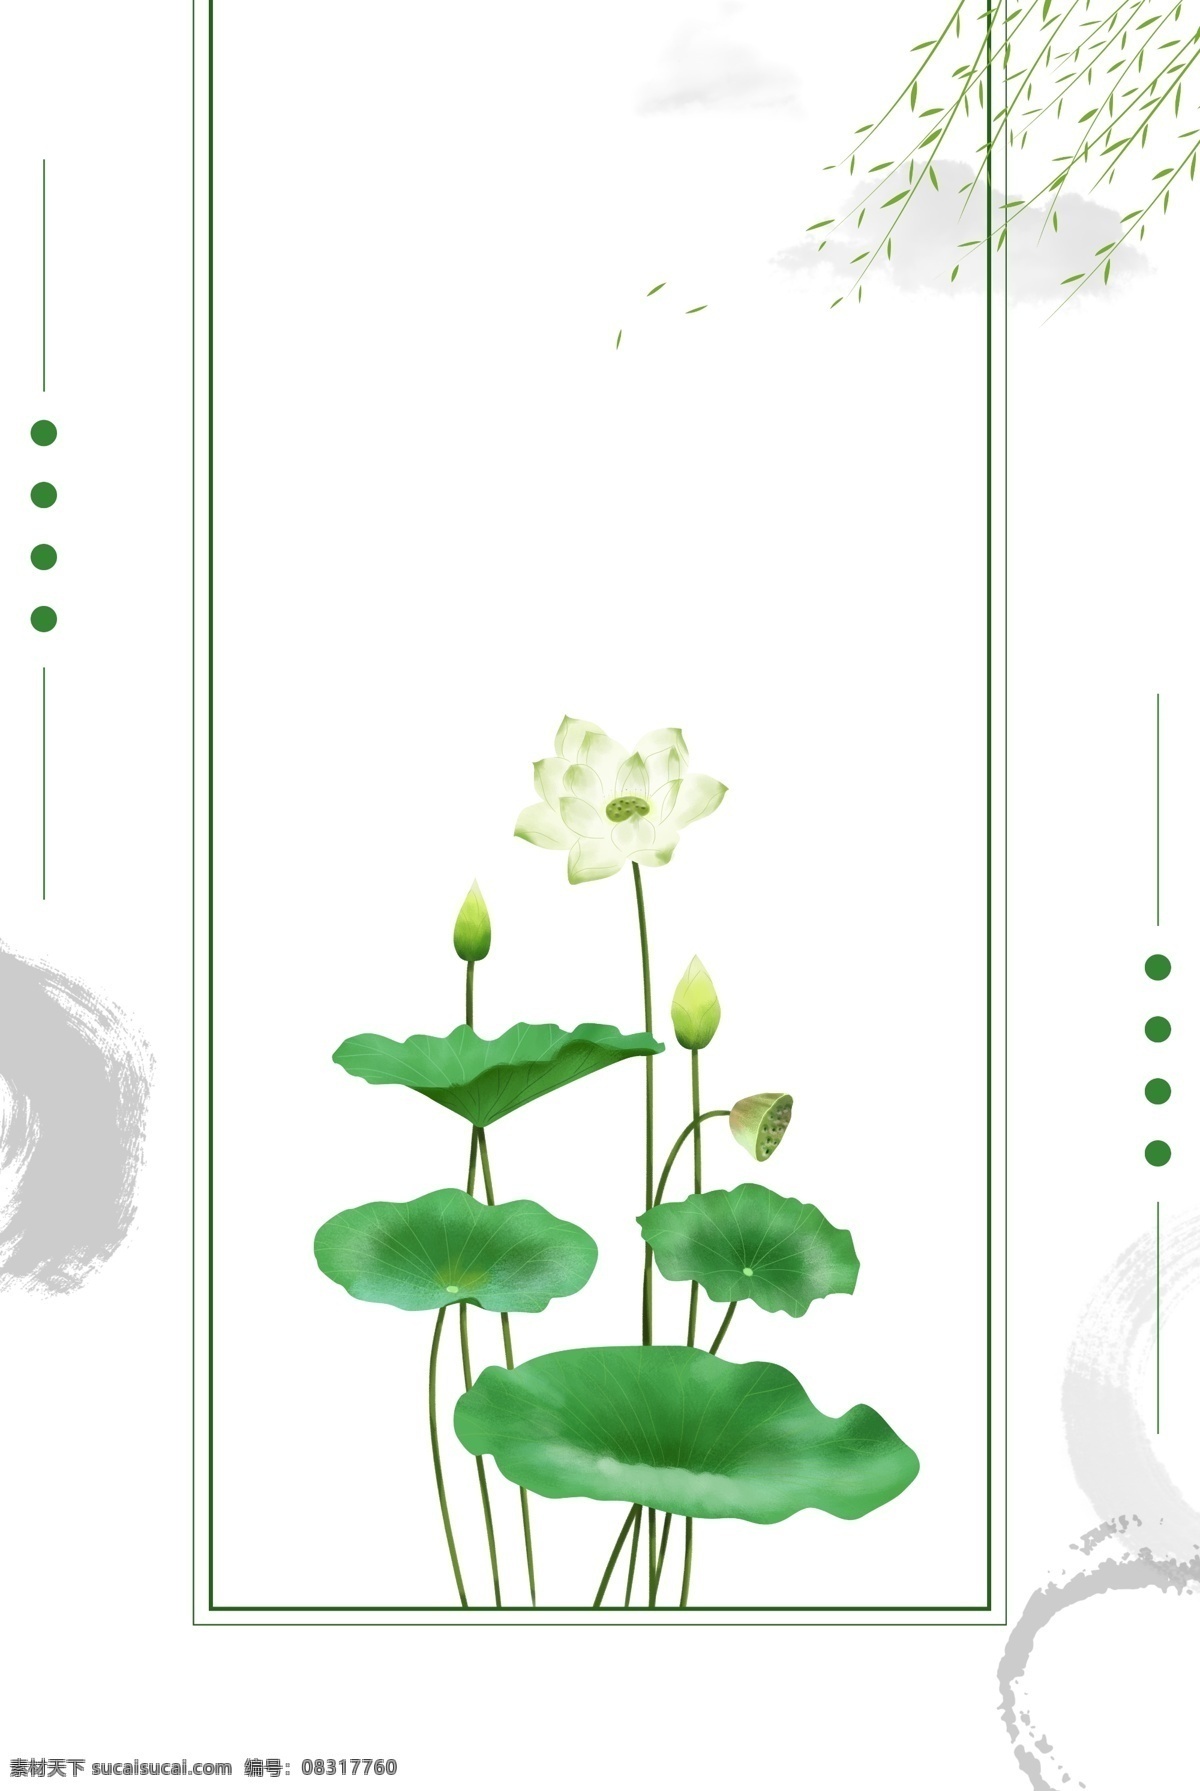 中国 二十四节气 海报 边框 海报边框 植物装饰 荷花 莲花 荷叶 植物 绿叶 中国风 绿色边框 绿色 水墨 柳叶 白莲花